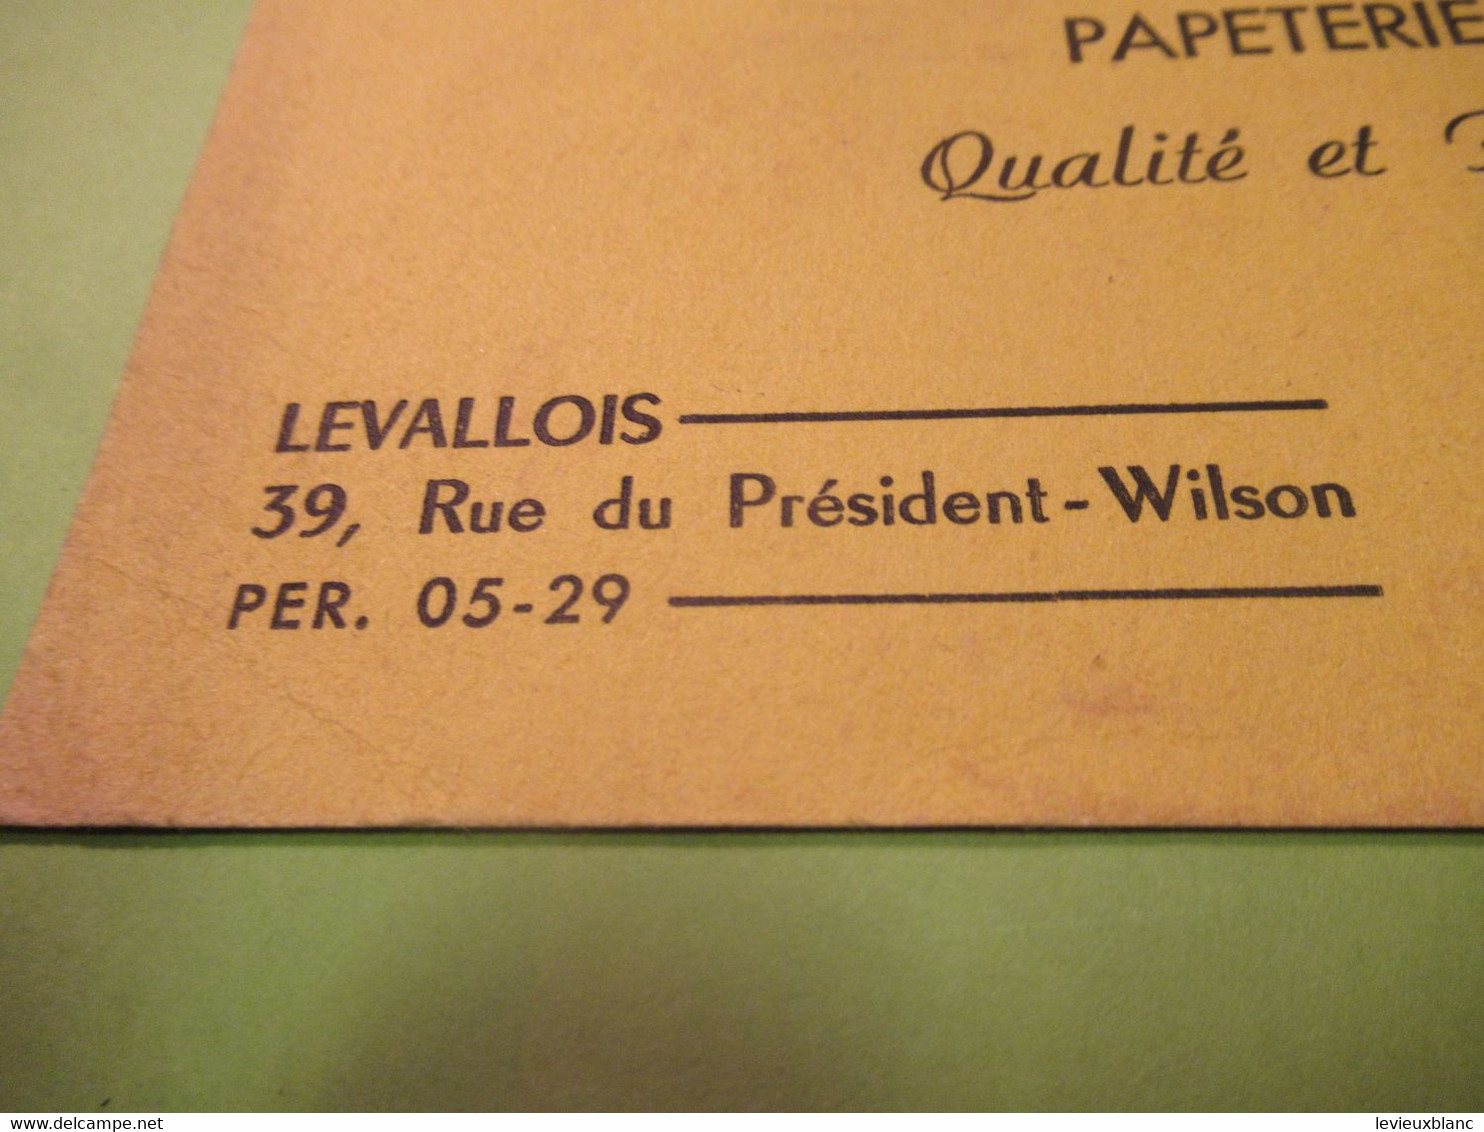 Buvard Ancien/Librairie /Papeterie Scolaire/ Tout Pour Lire,écrire, Dessiner/LEVALLOIS/ NANTERRE/Vers 1950-60     BUV592 - Cartoleria